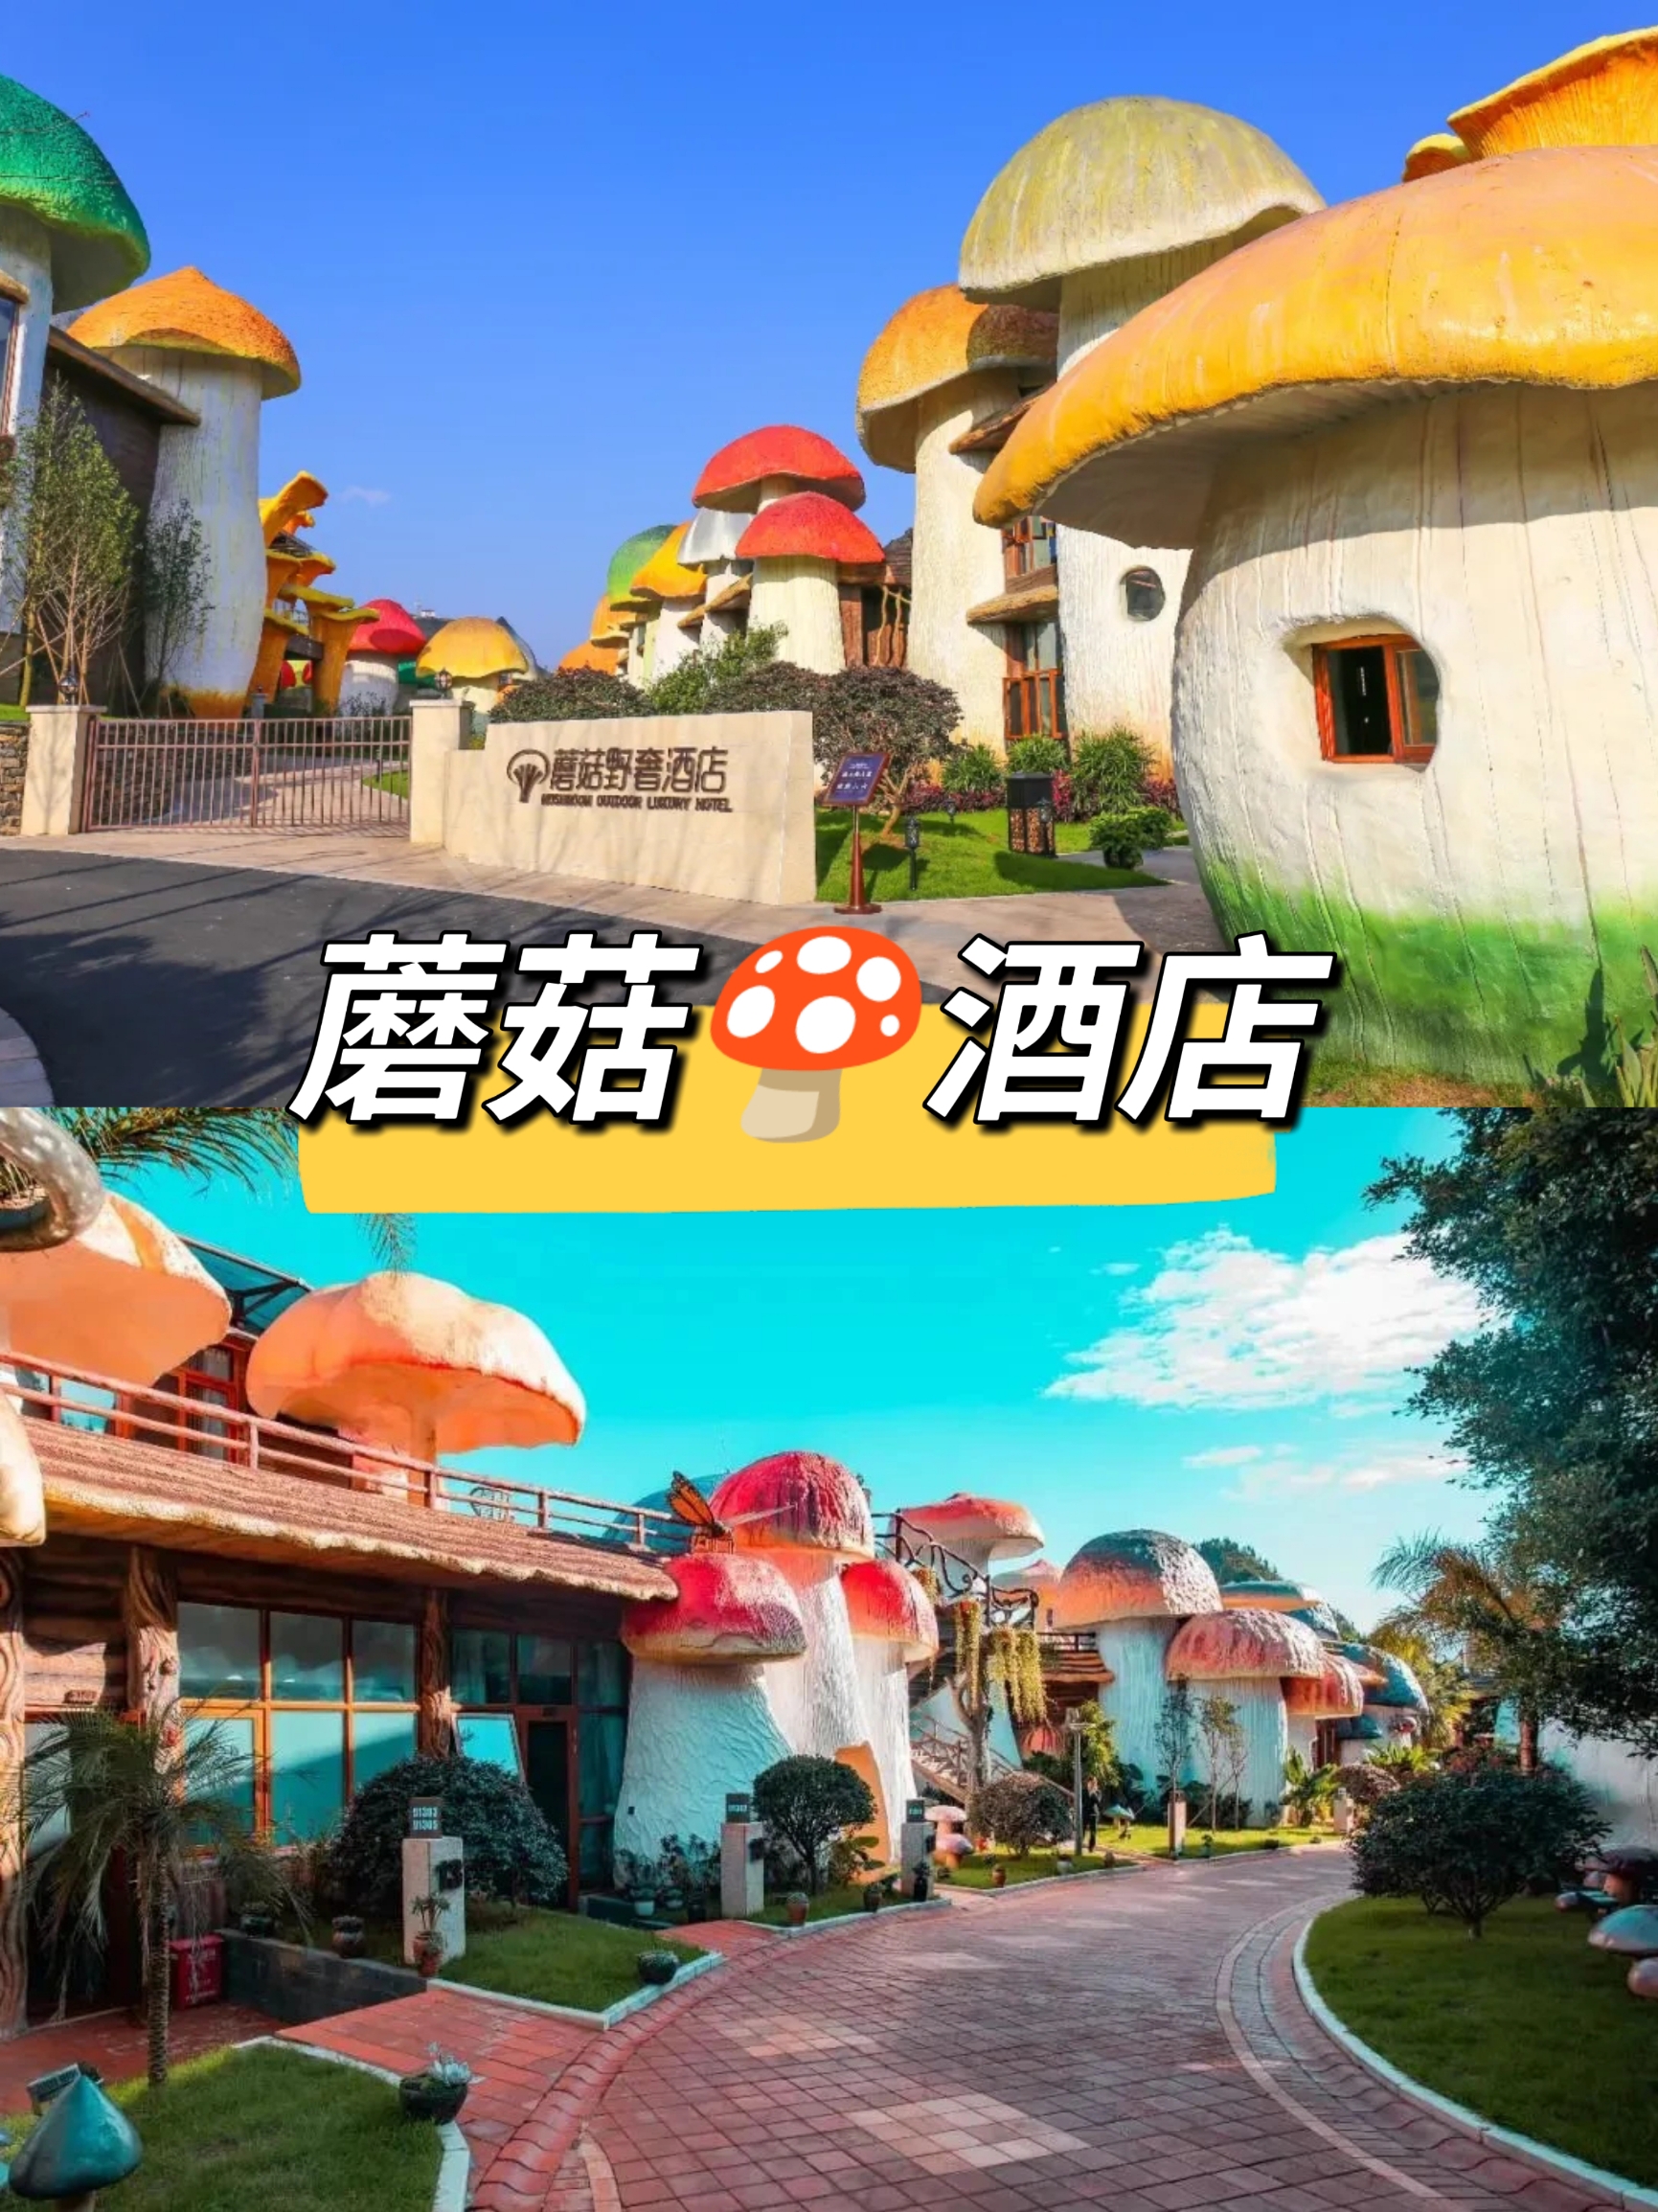 🍄入住蘑菇野奢酒店，走进奇幻童话贵州🍄